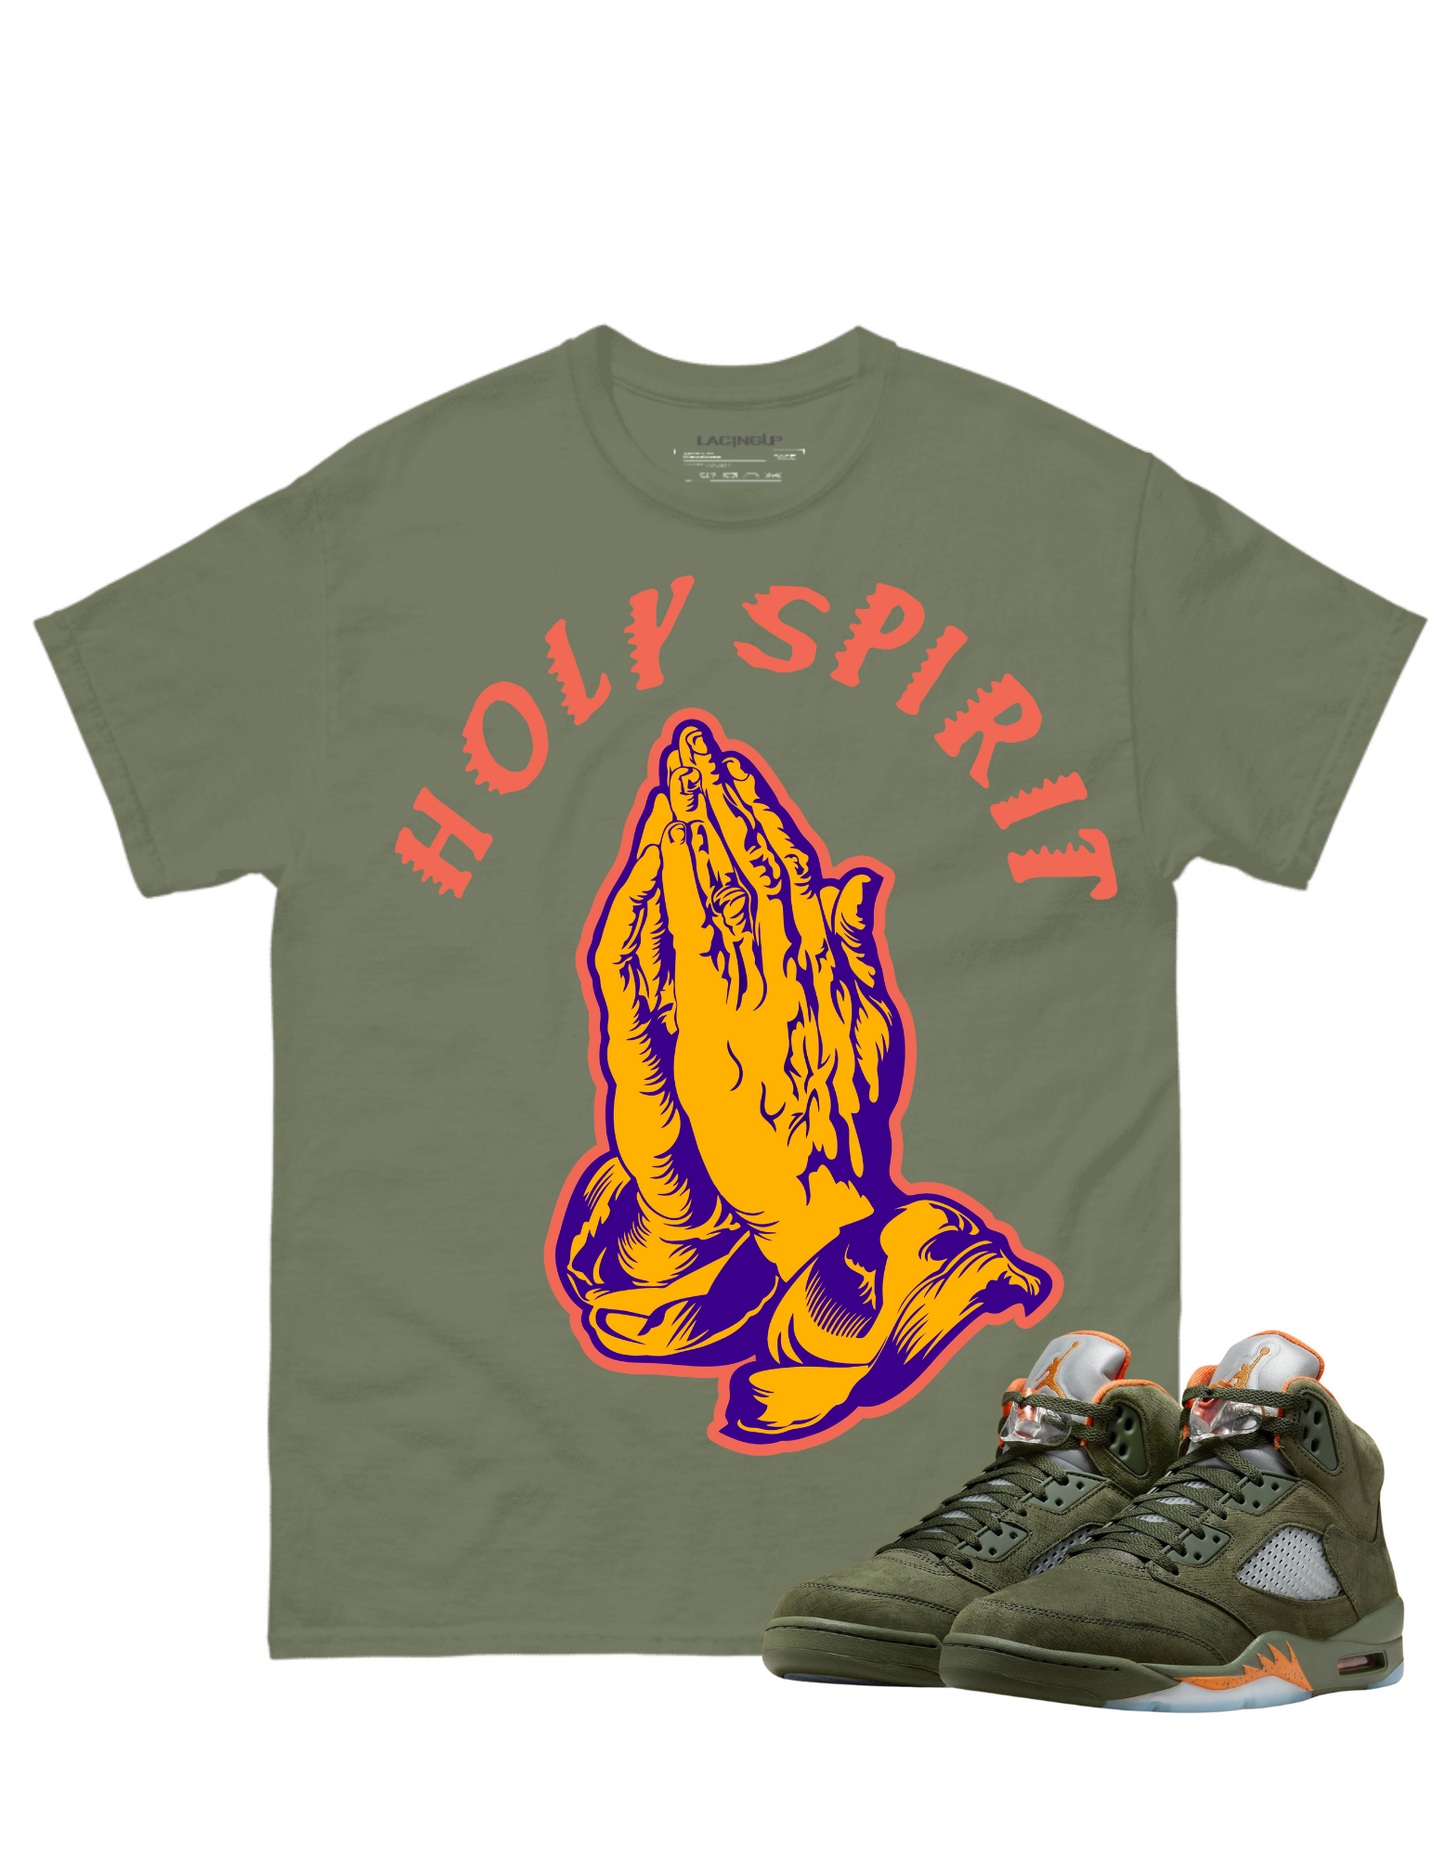 Jordan 5 Olive Holy Spirit olive tee-Lacing Up